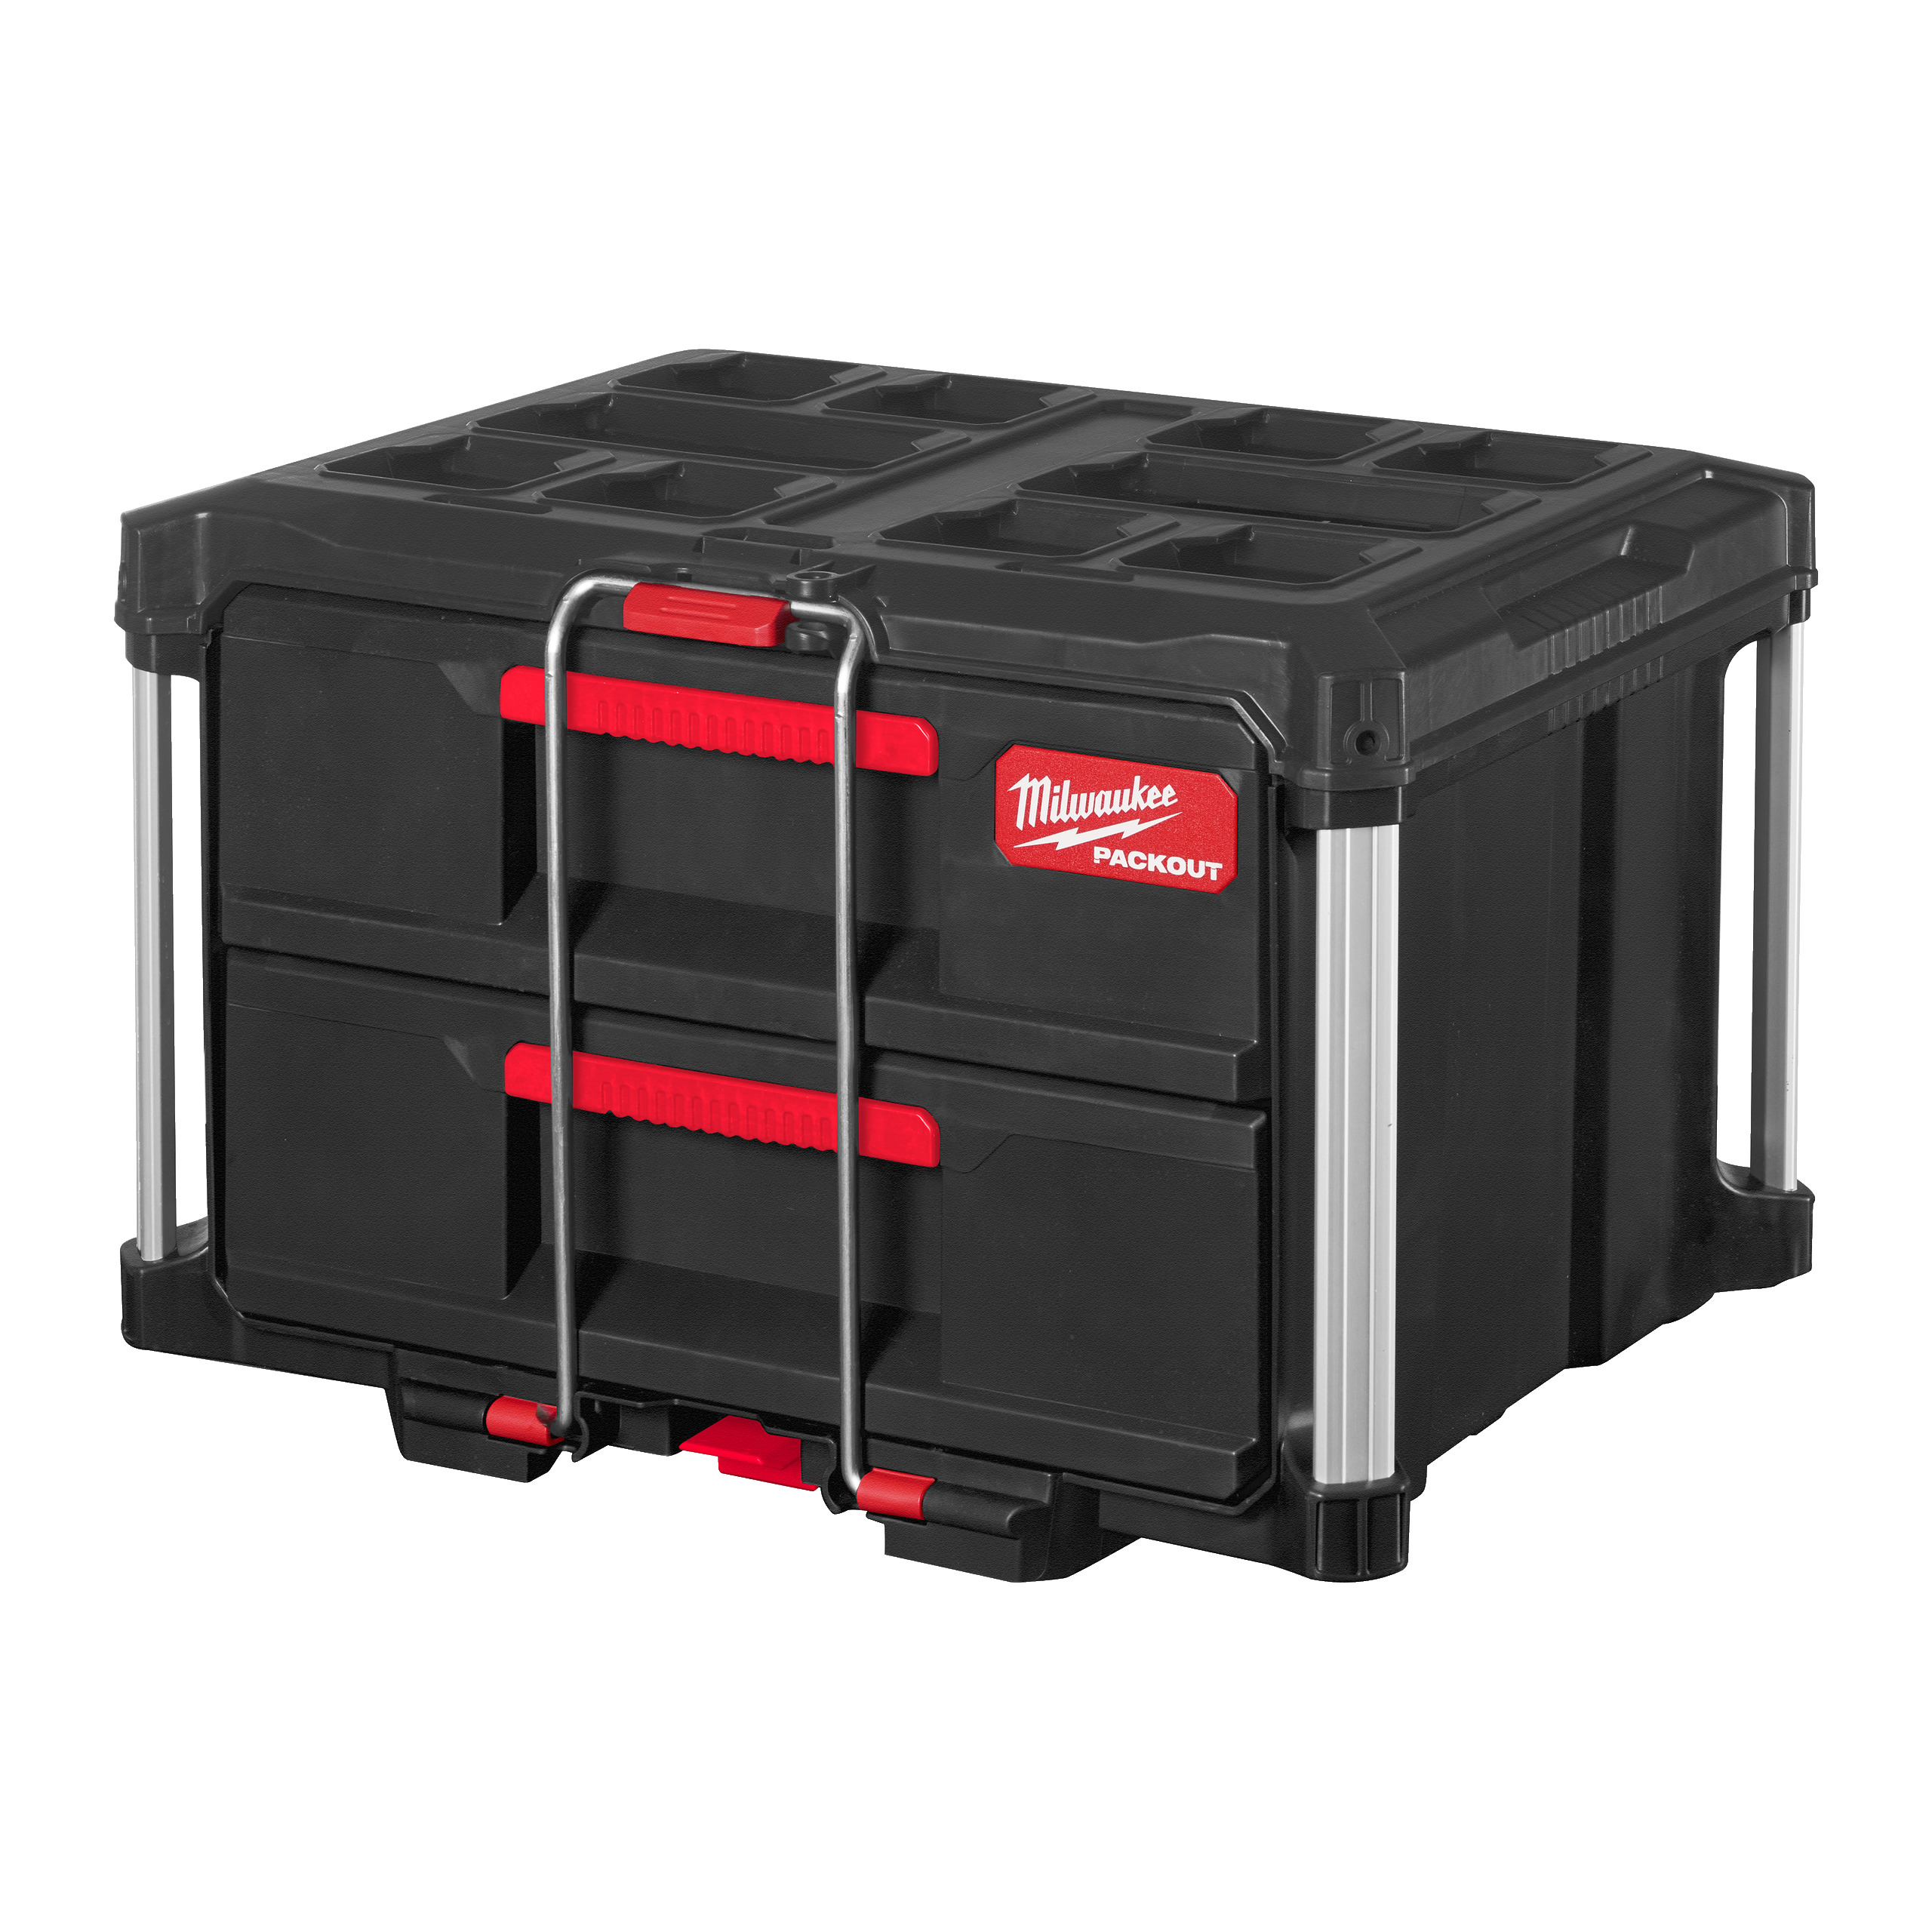 PACKOUT Koffer mit 2 Schubladen | 560 x 410 x 360 mm